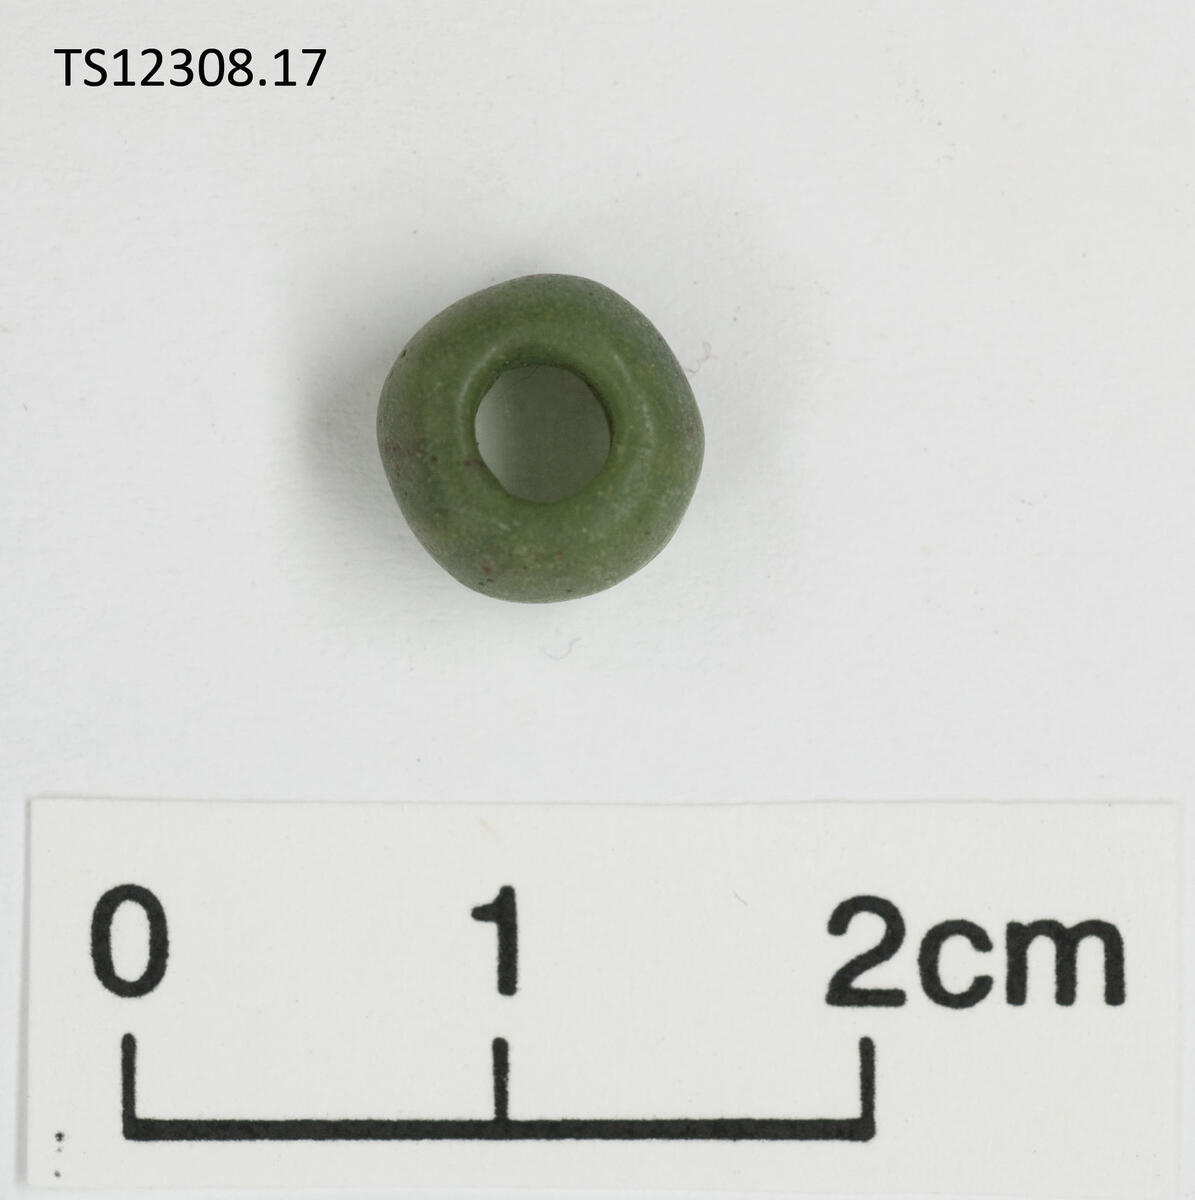 1 stk perle av glass. Grønn. Rundede sider, ujevn form. 0,9 cm i diameter, 0,7 cm tykk.